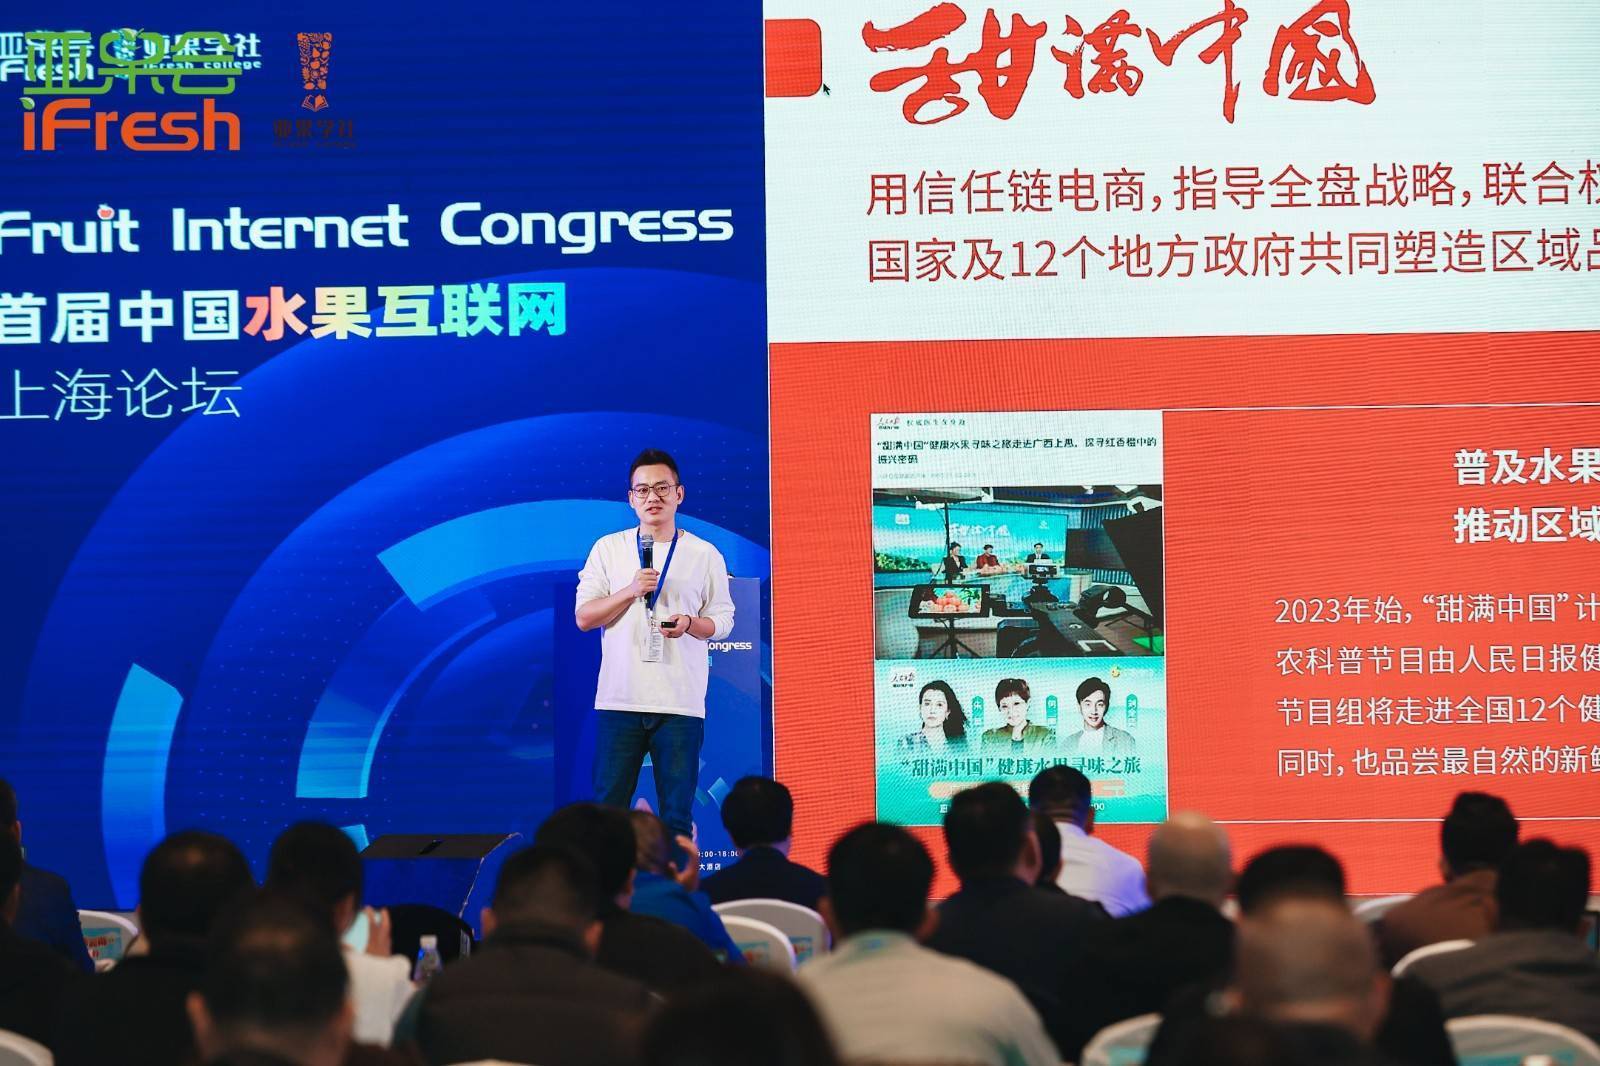 资讯|辰颐物语出席首届水果互联网论坛 与你分享甜满中国